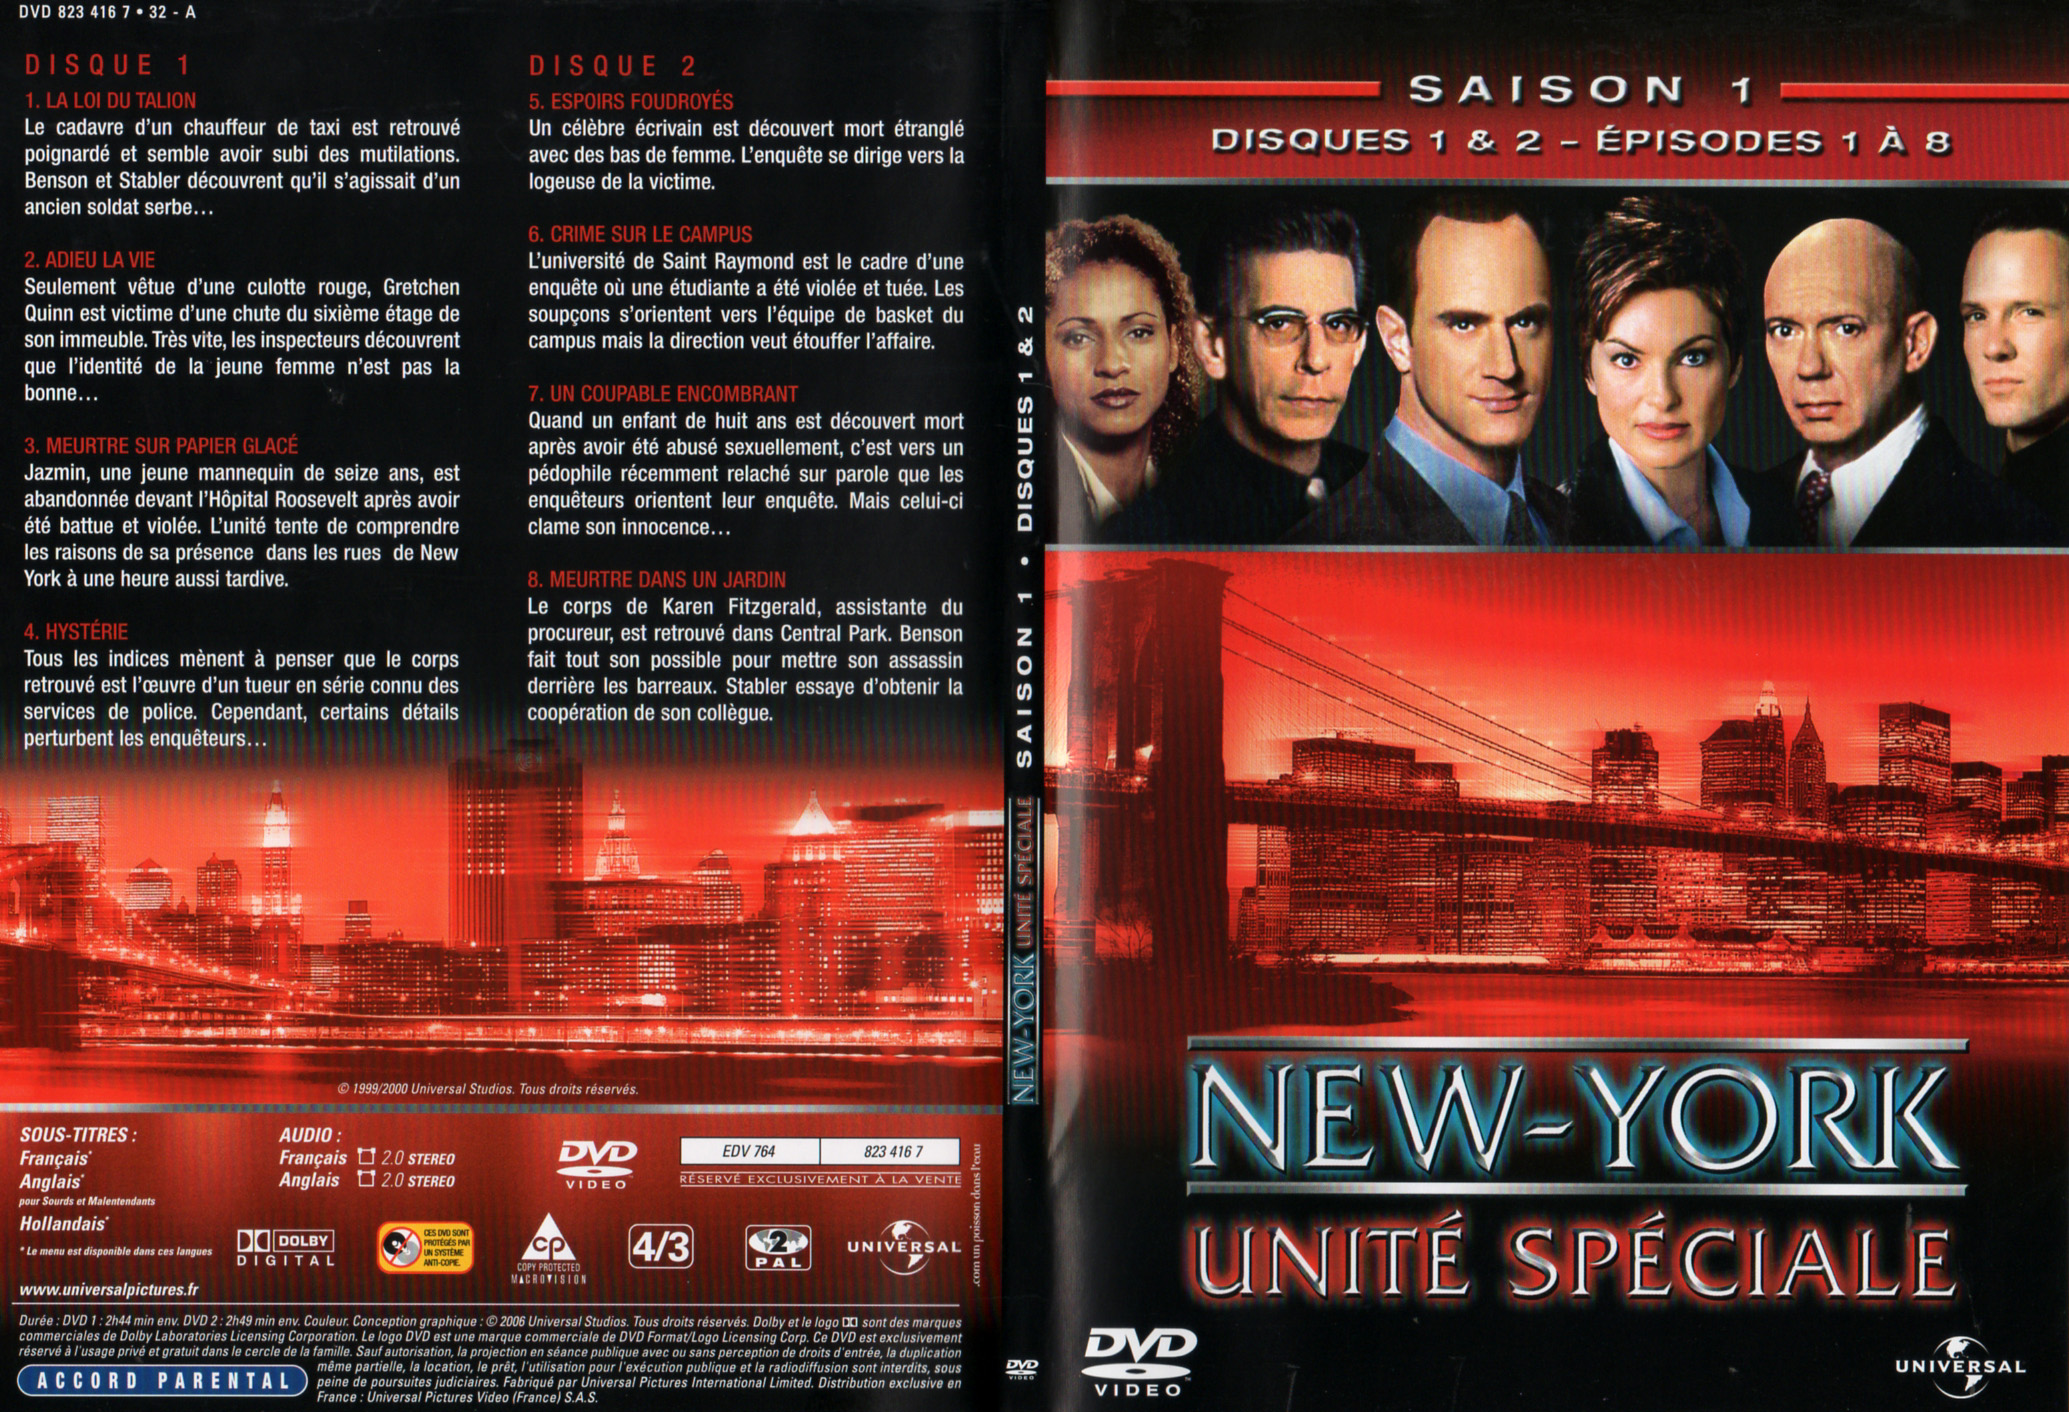 Jaquette DVD New York unit spciale saison 1 DVD 1